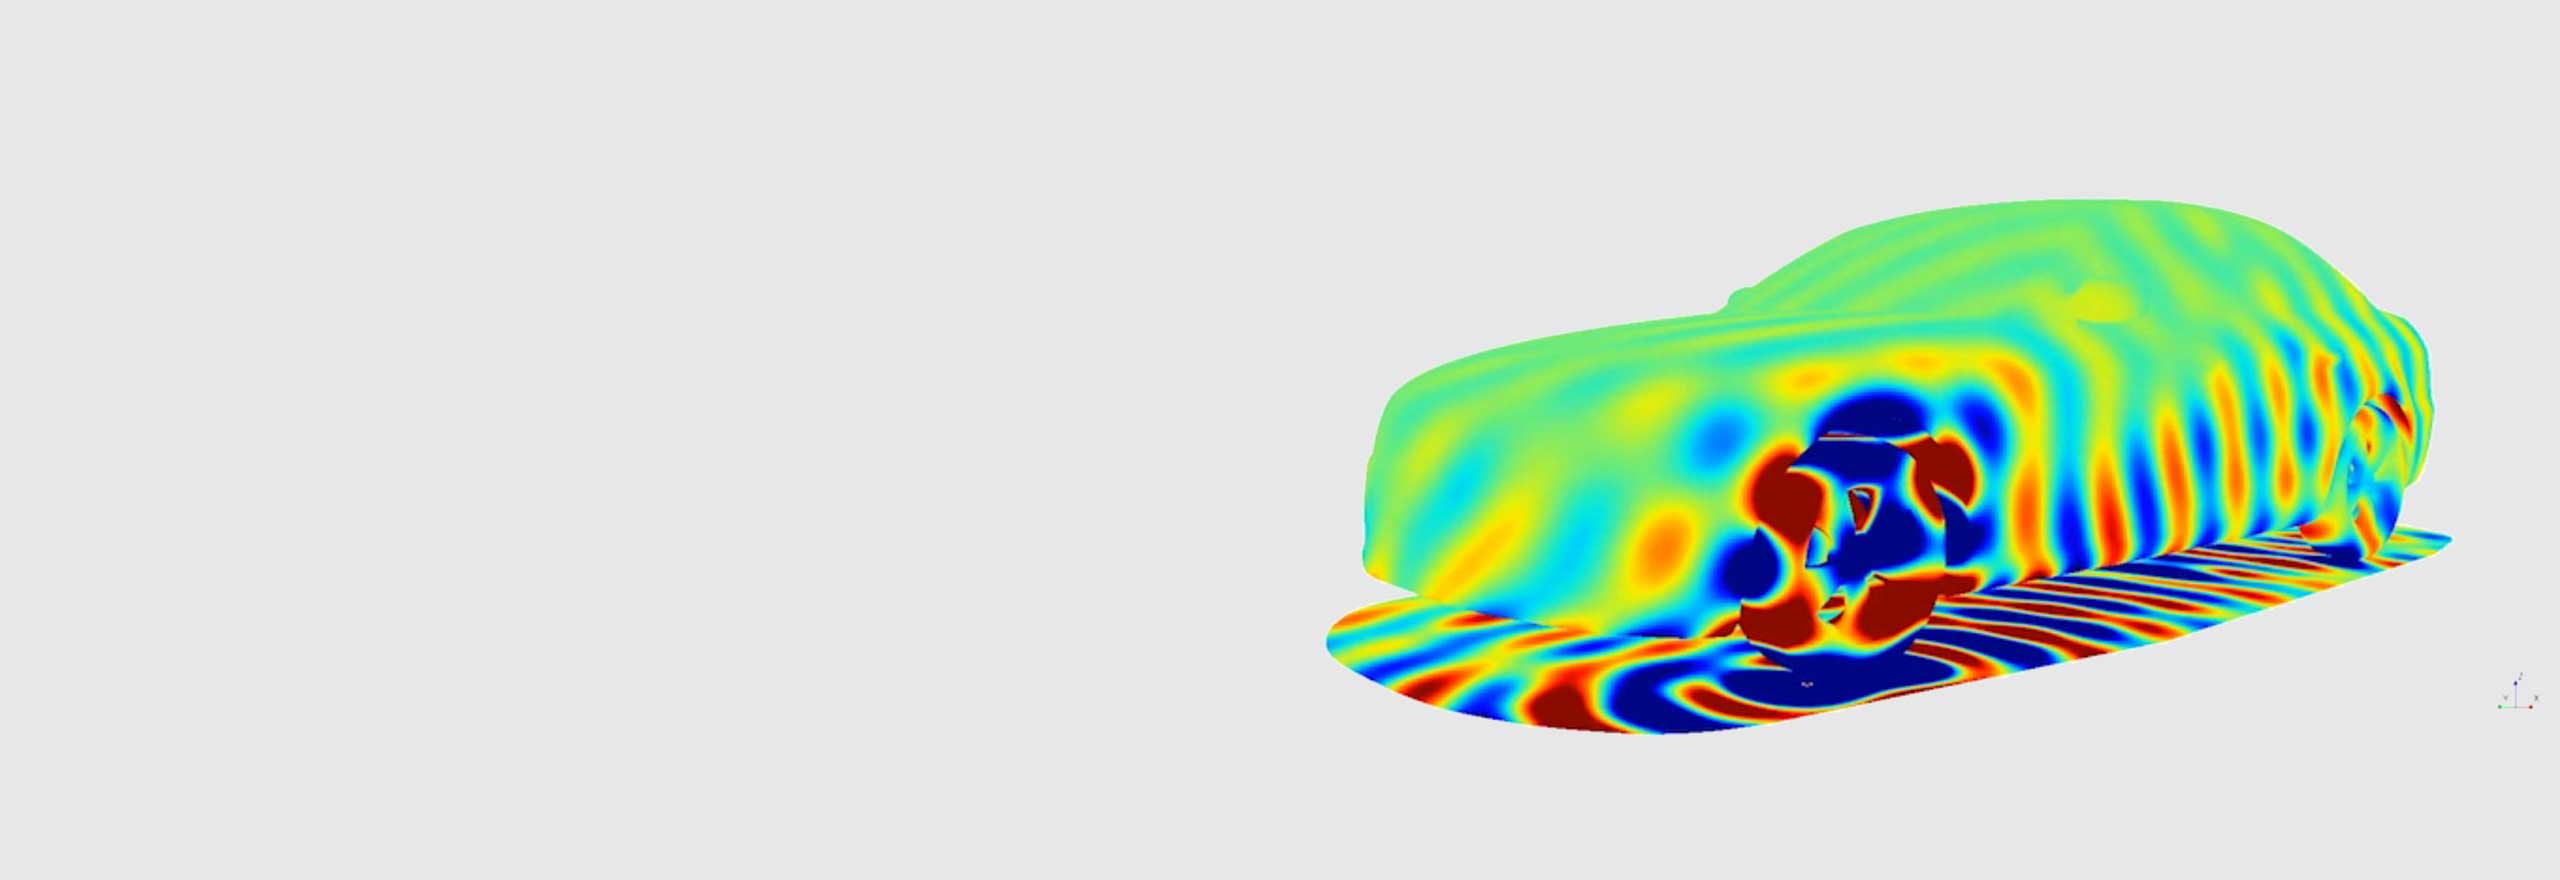 Simulation du bruit de passage d’un véhicule à l’aide d’un logiciel de simulation acoustique 